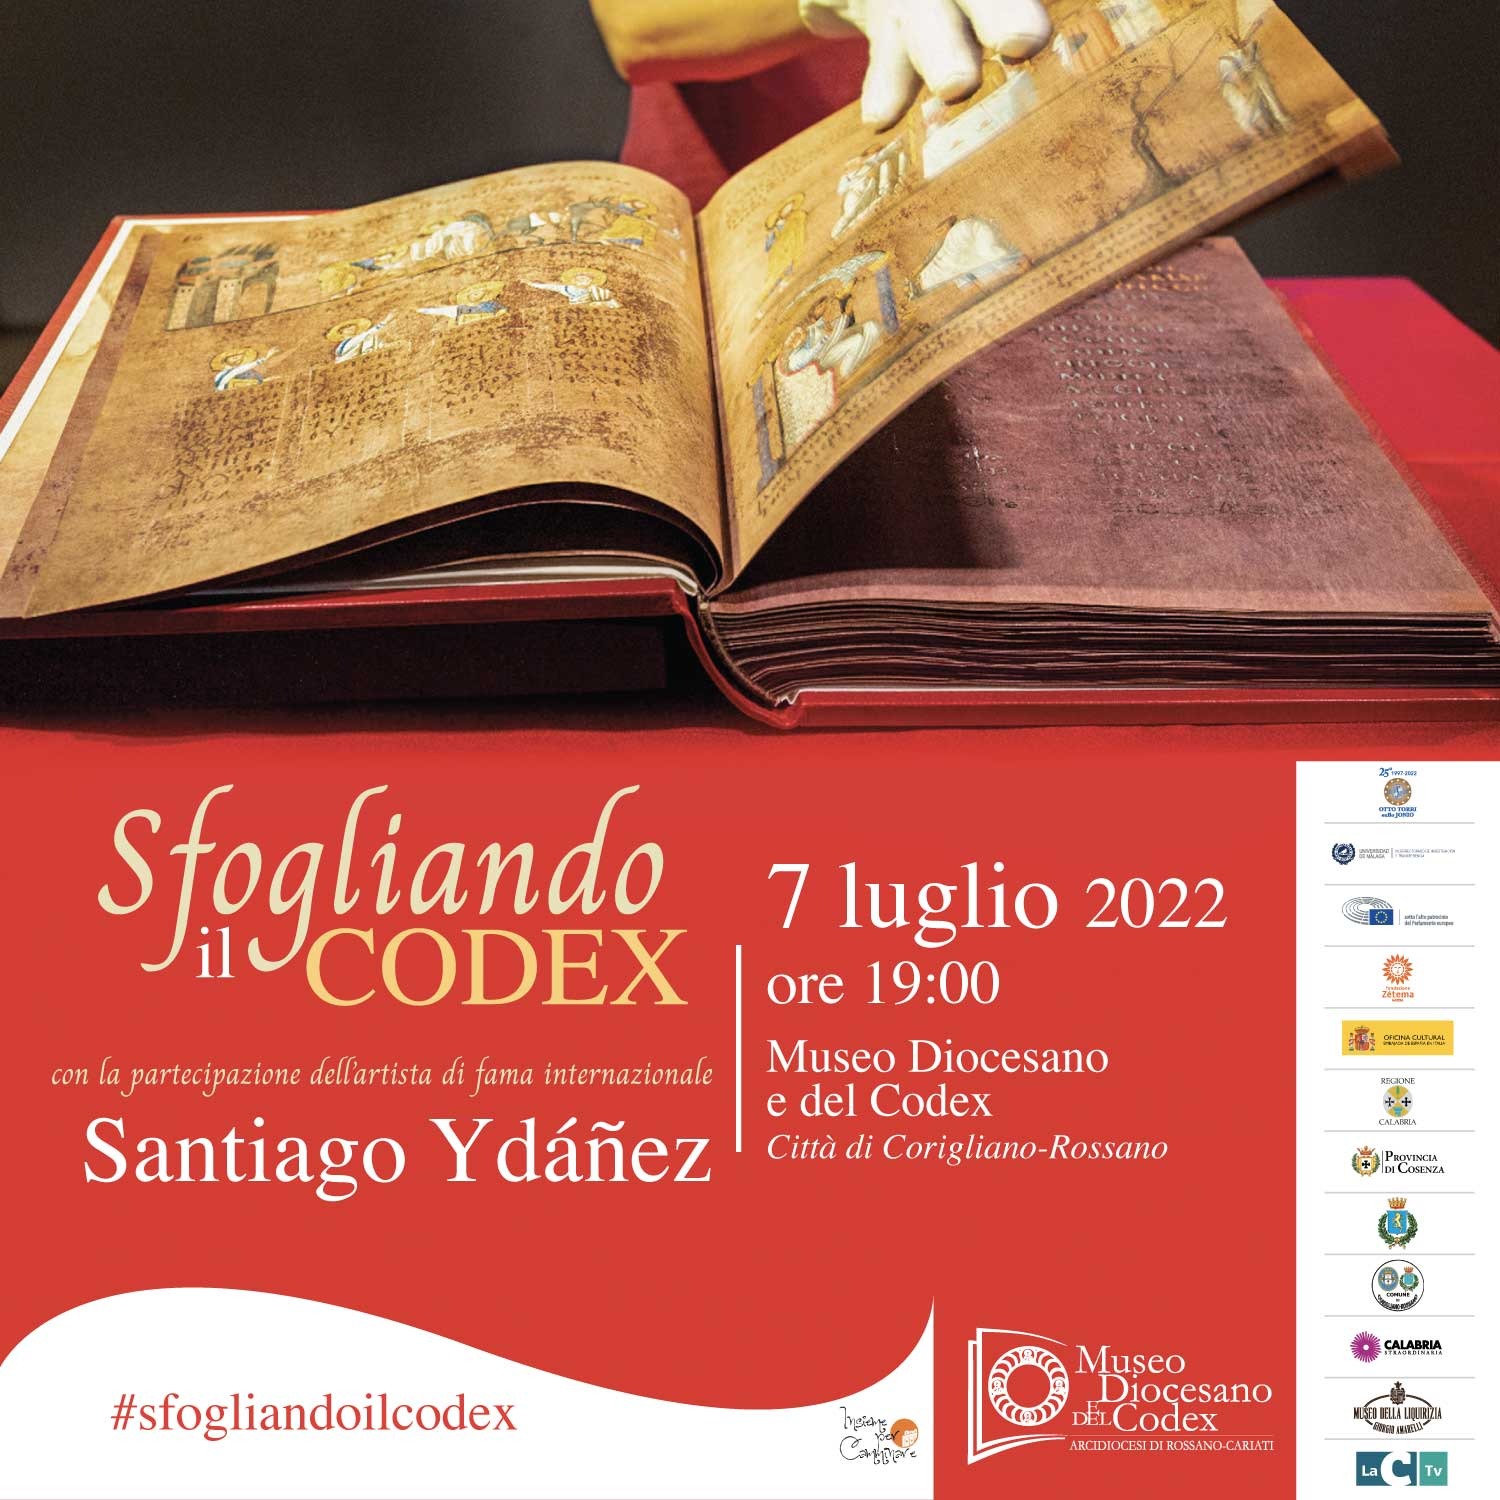 Sfogliando il Codex con l'artista Santiago Ydáñez